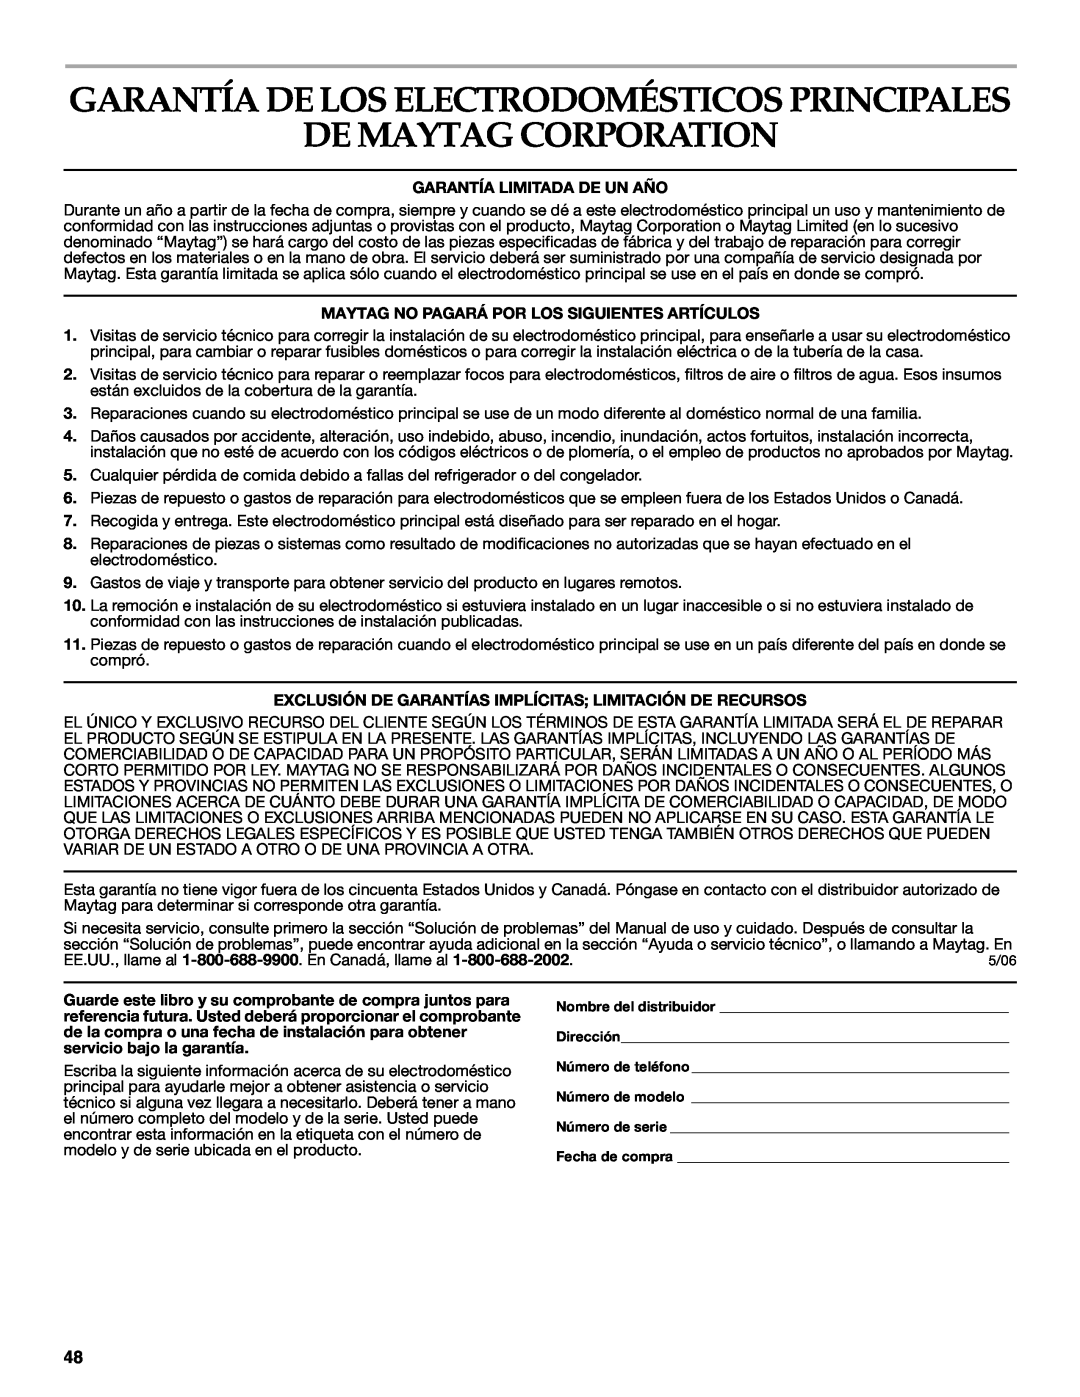 Maytag 8182969 manual De Maytag Corporation, Garantía De Los Electrodomésticos Principales 